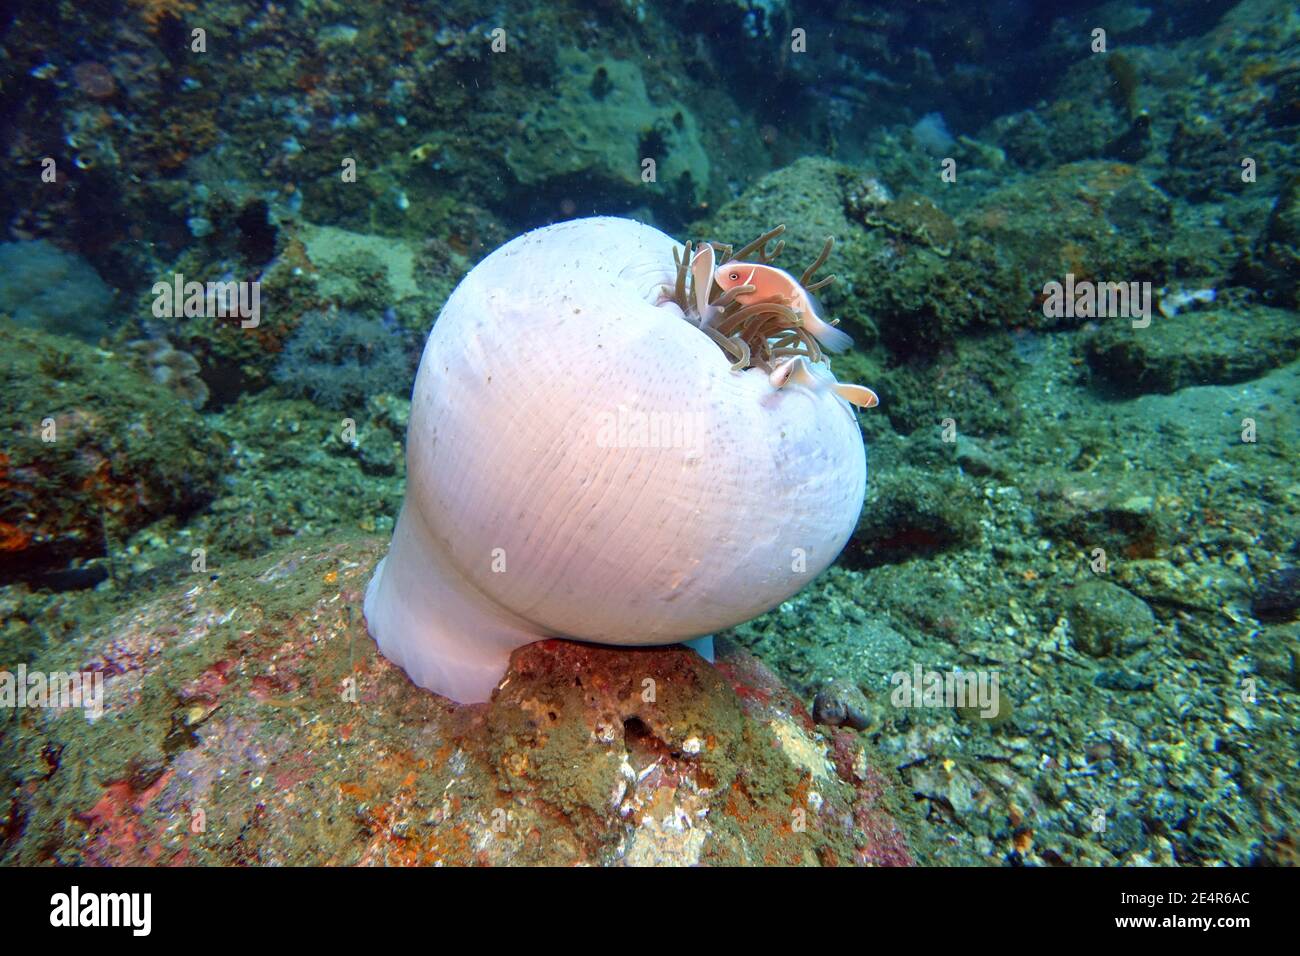 Halsband-Anemonenfisch oder Rosa Weißrückenanemonenfisch (Amphiprion perideraion) auf einer fast geschlossenen Prachtanemone (Heteractis magnifica), L. Foto Stock